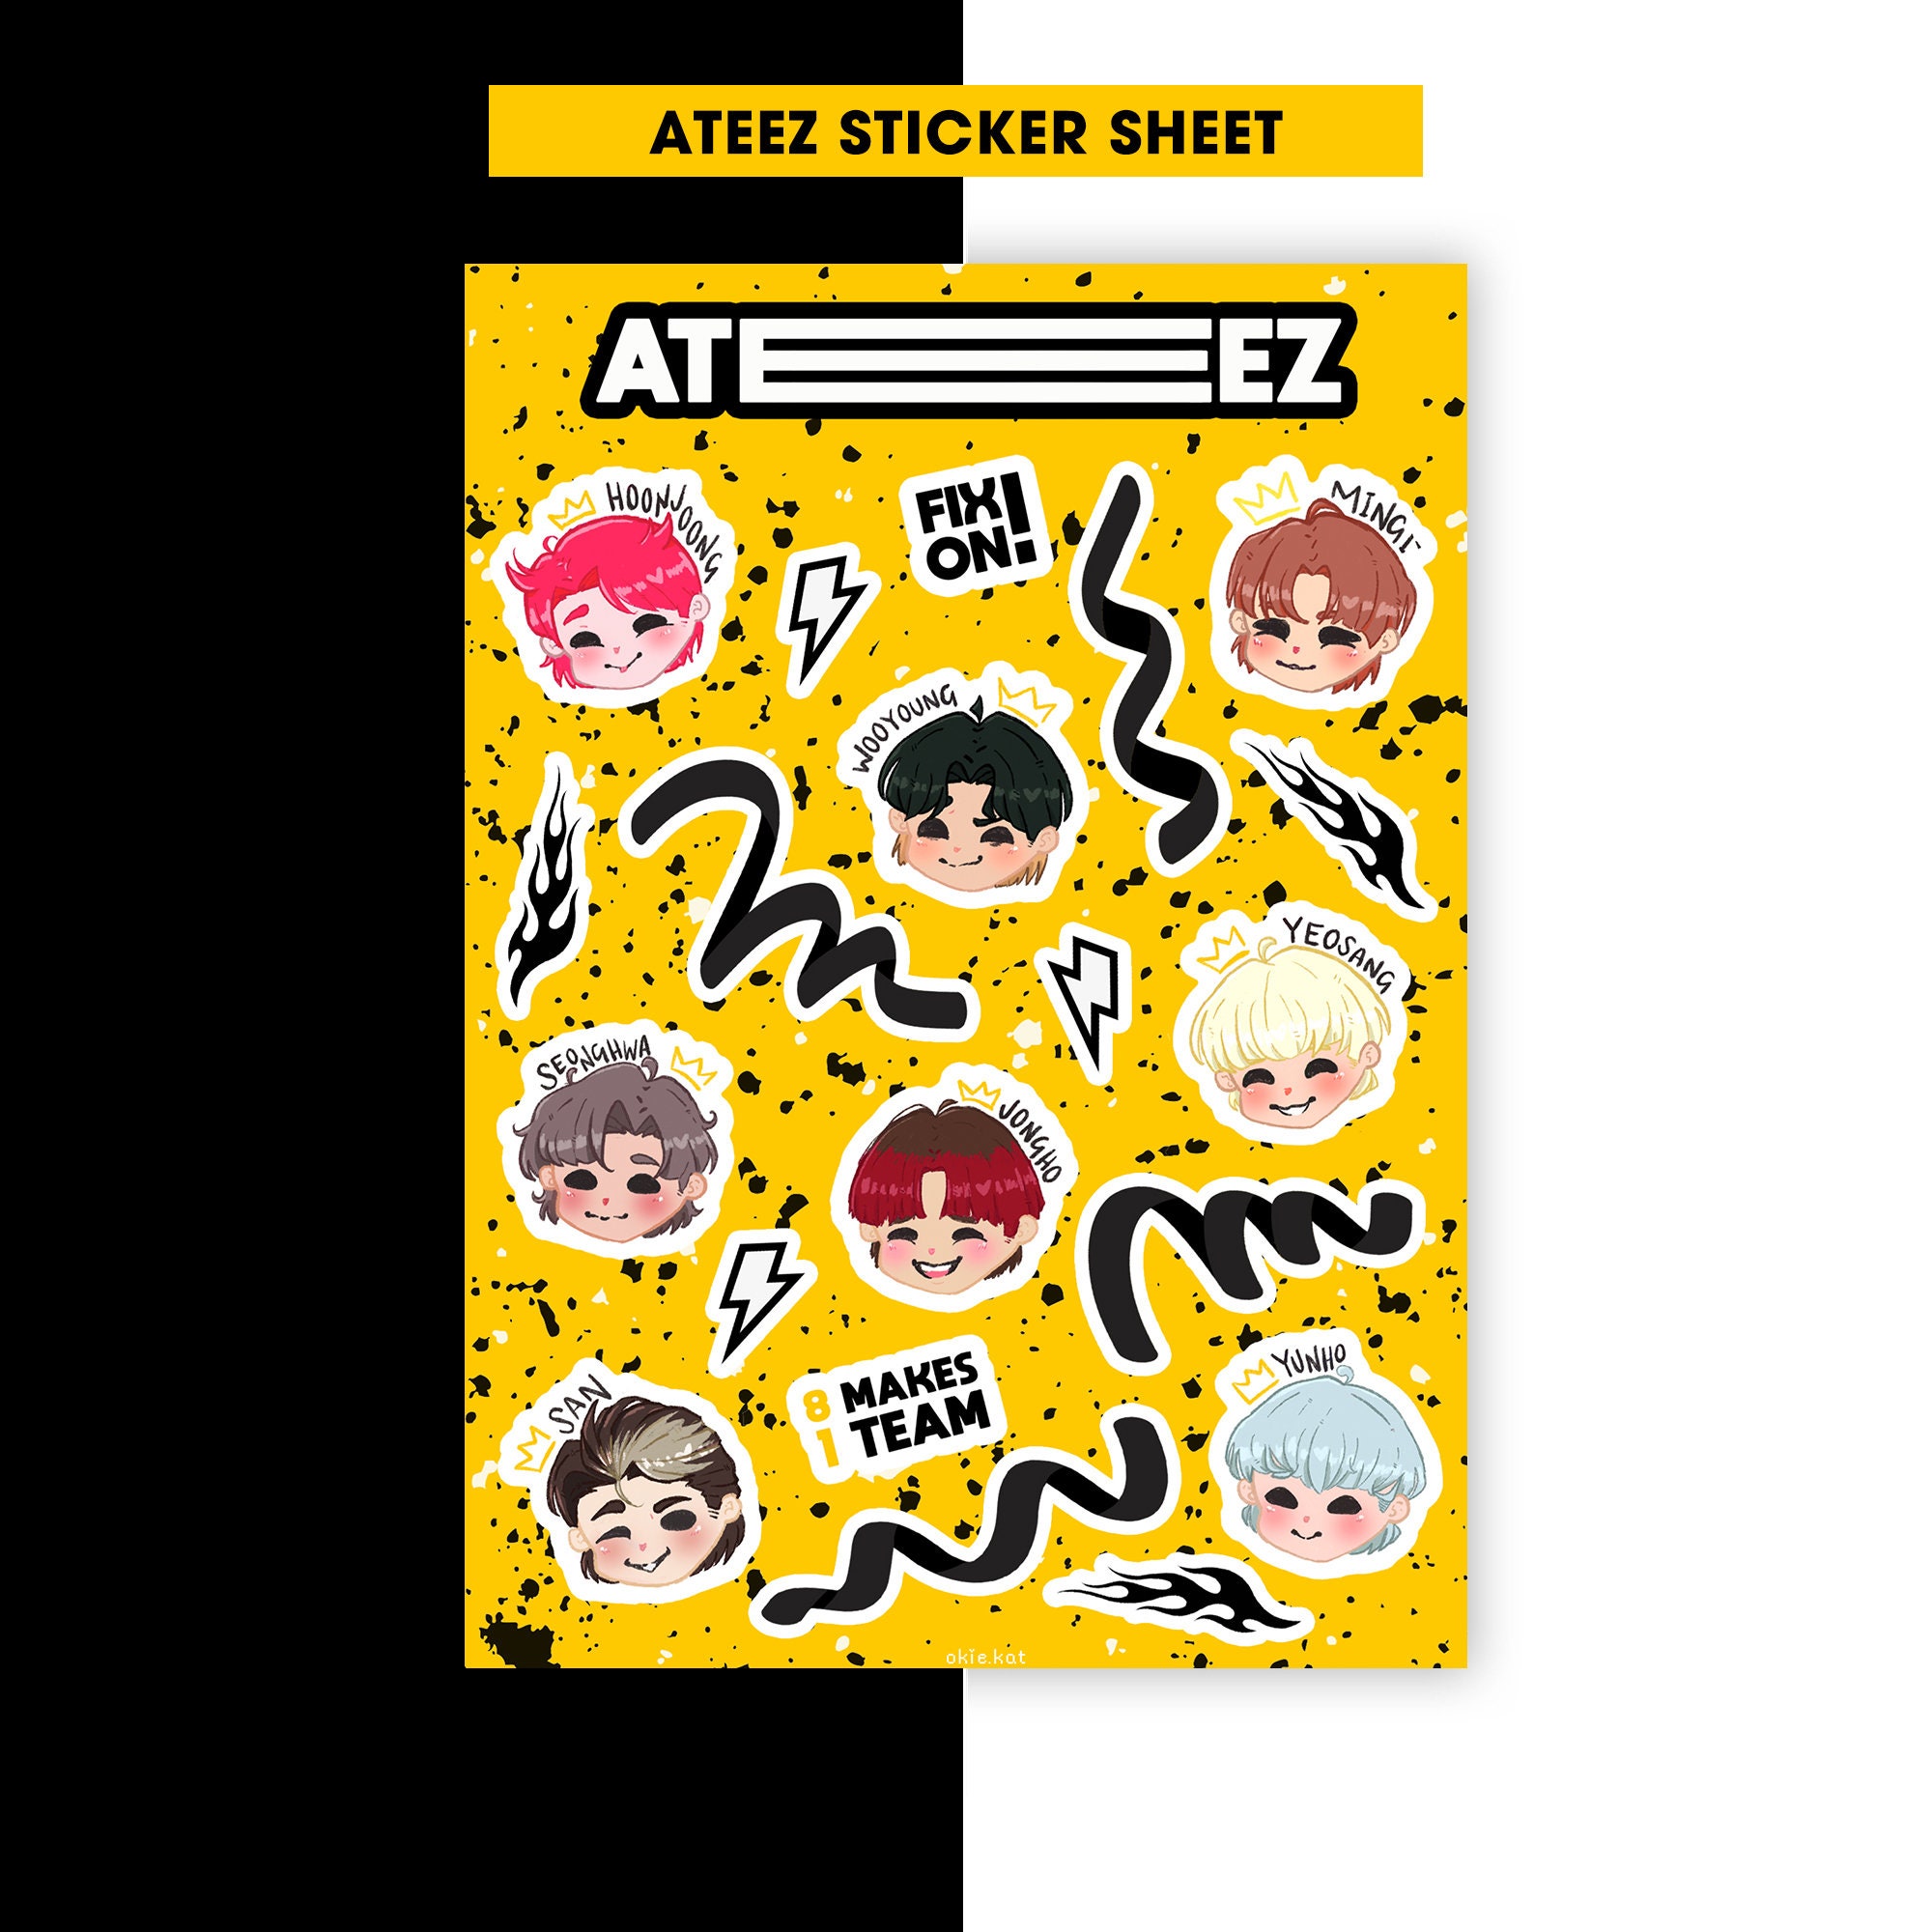 ATEEZ Sticker Sheet | Kpop Sticker Sheet | Kpop Sticker Set